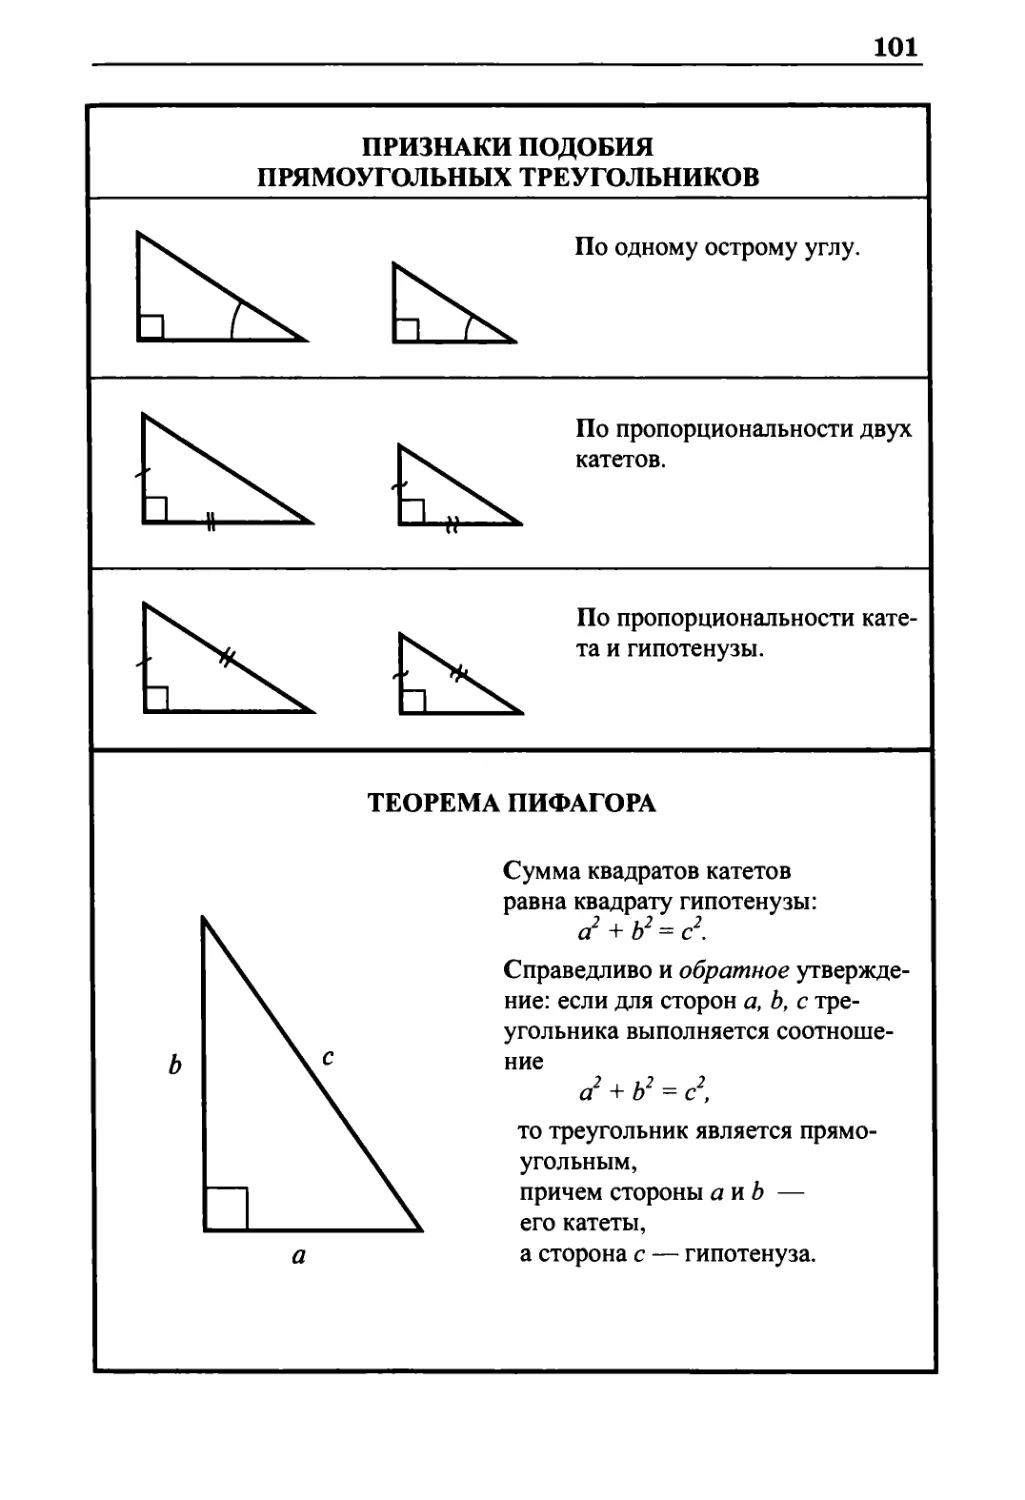 Признаки подобия прямоугольных треугольников
Теорема Пифагора